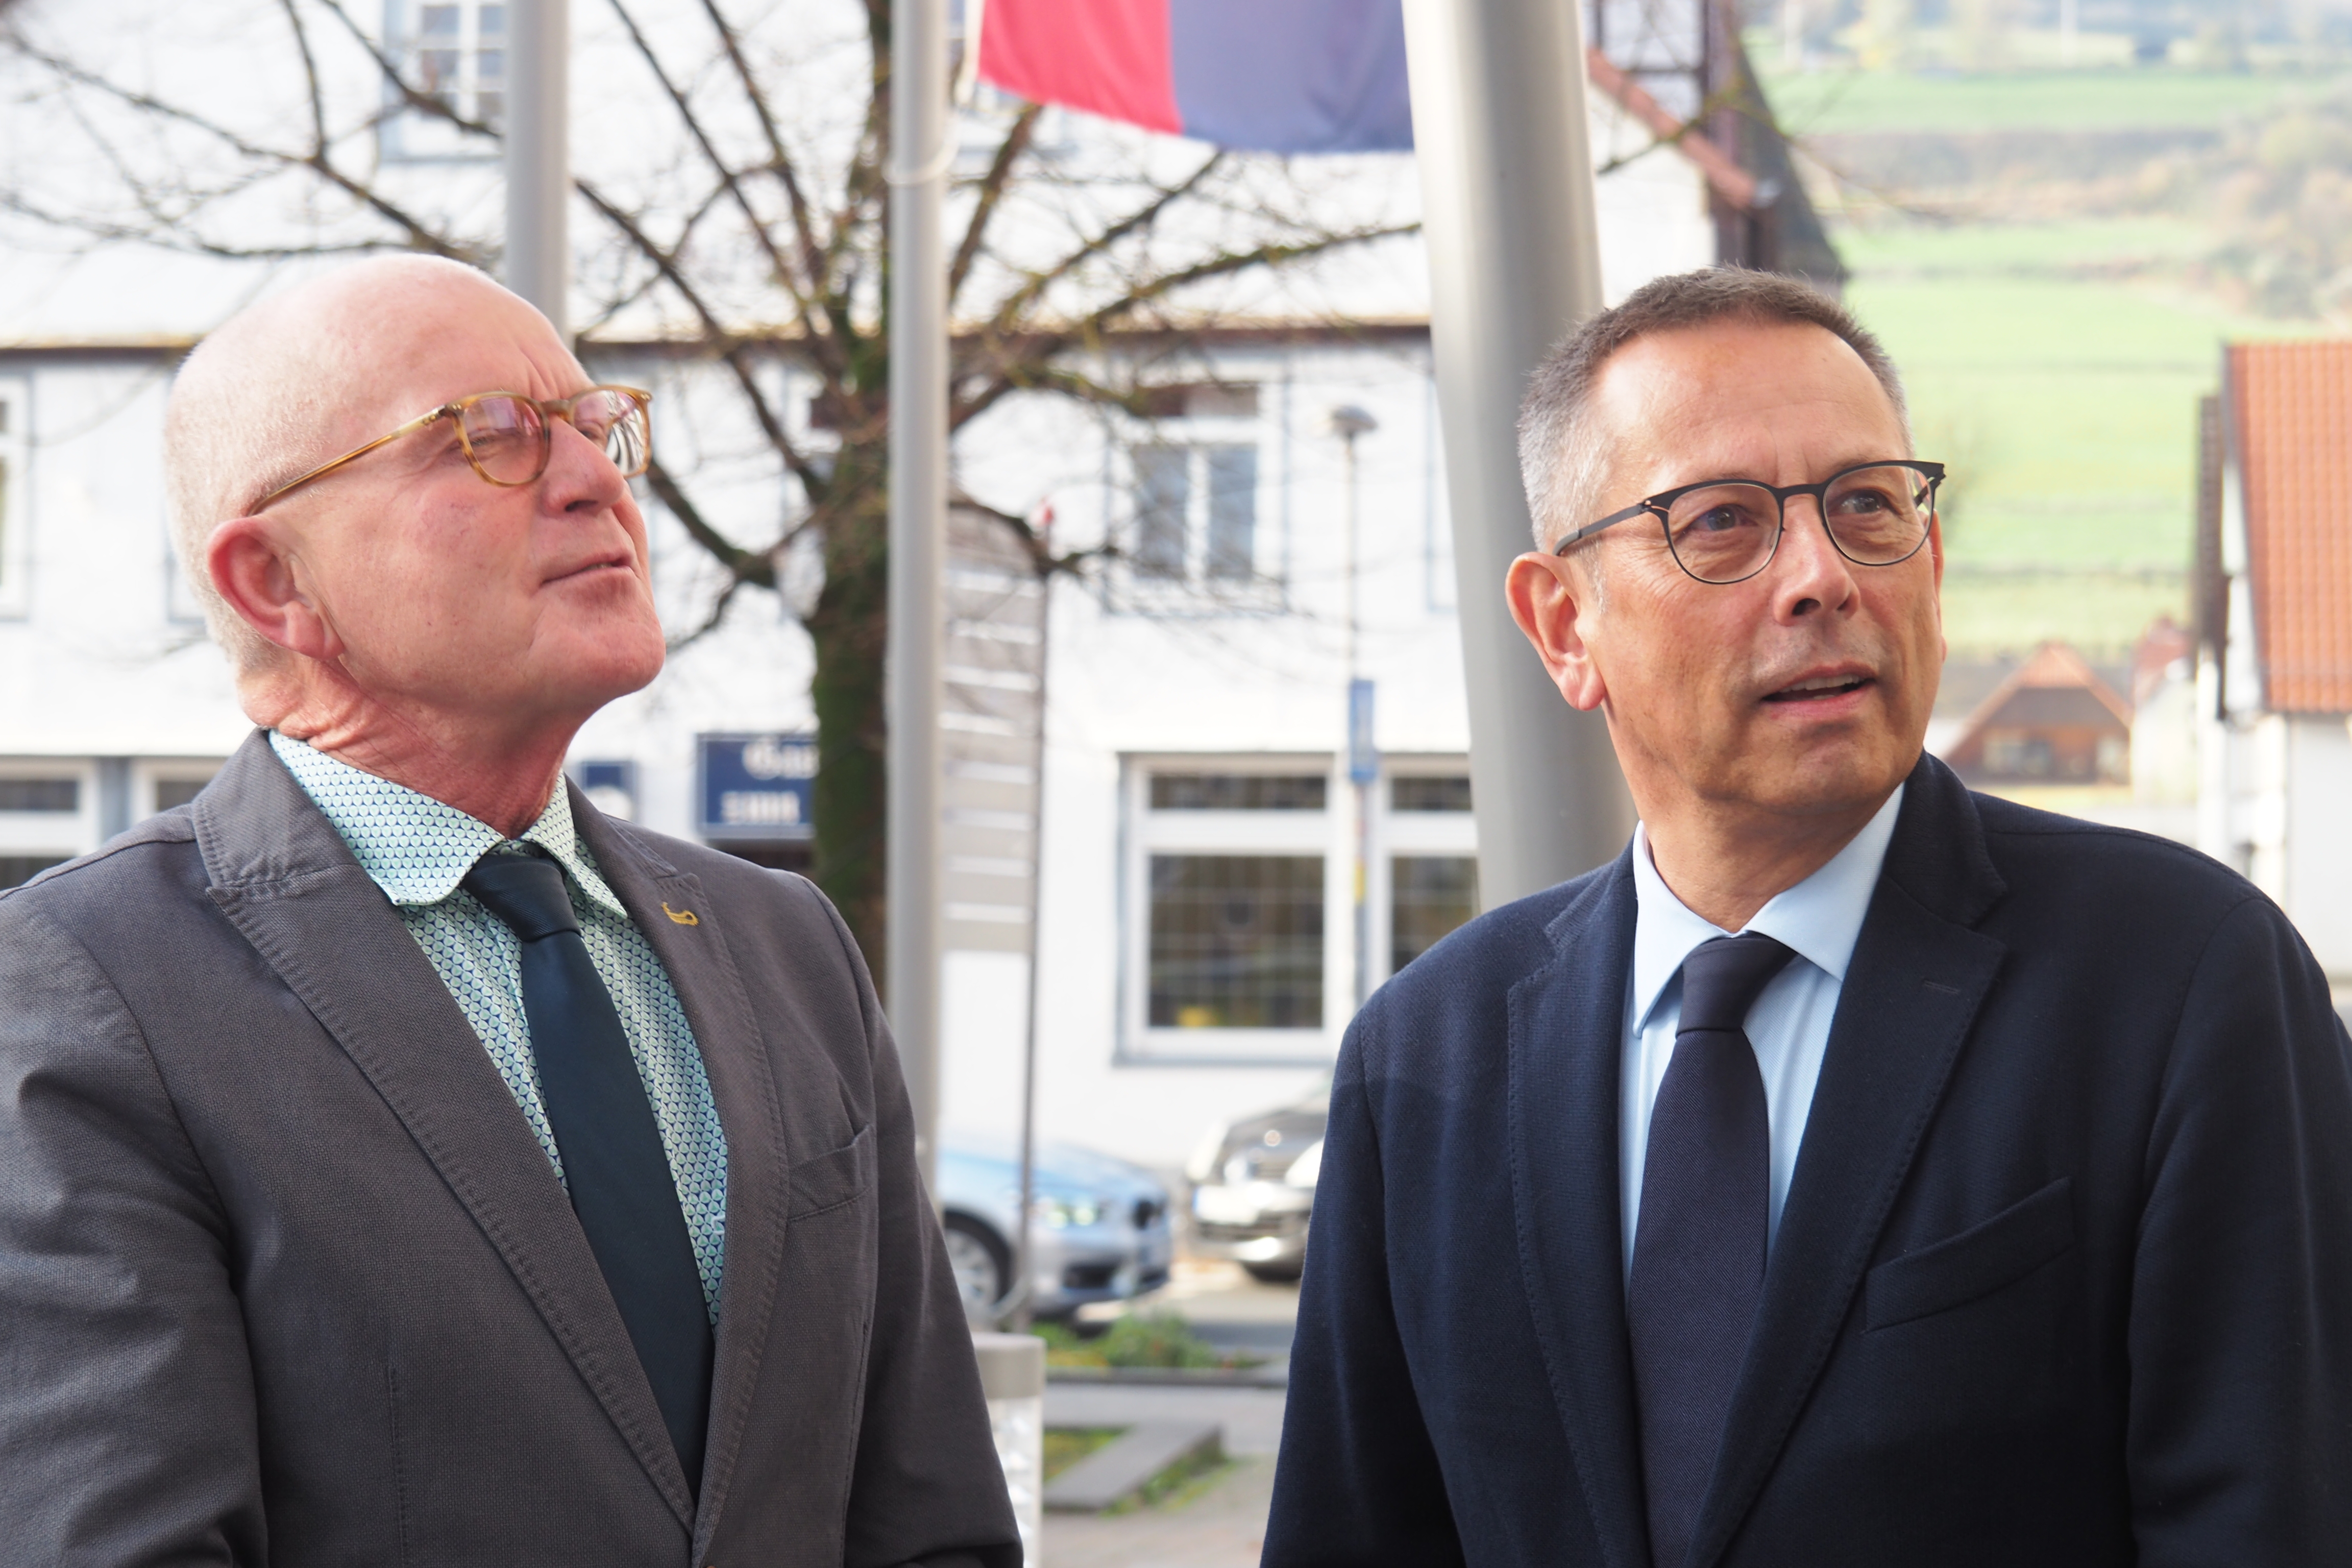 v.l.n.r.: Lügdes Bürgermeister Heinz Reker und UBSKM Johannes-Wilhelm Rörig